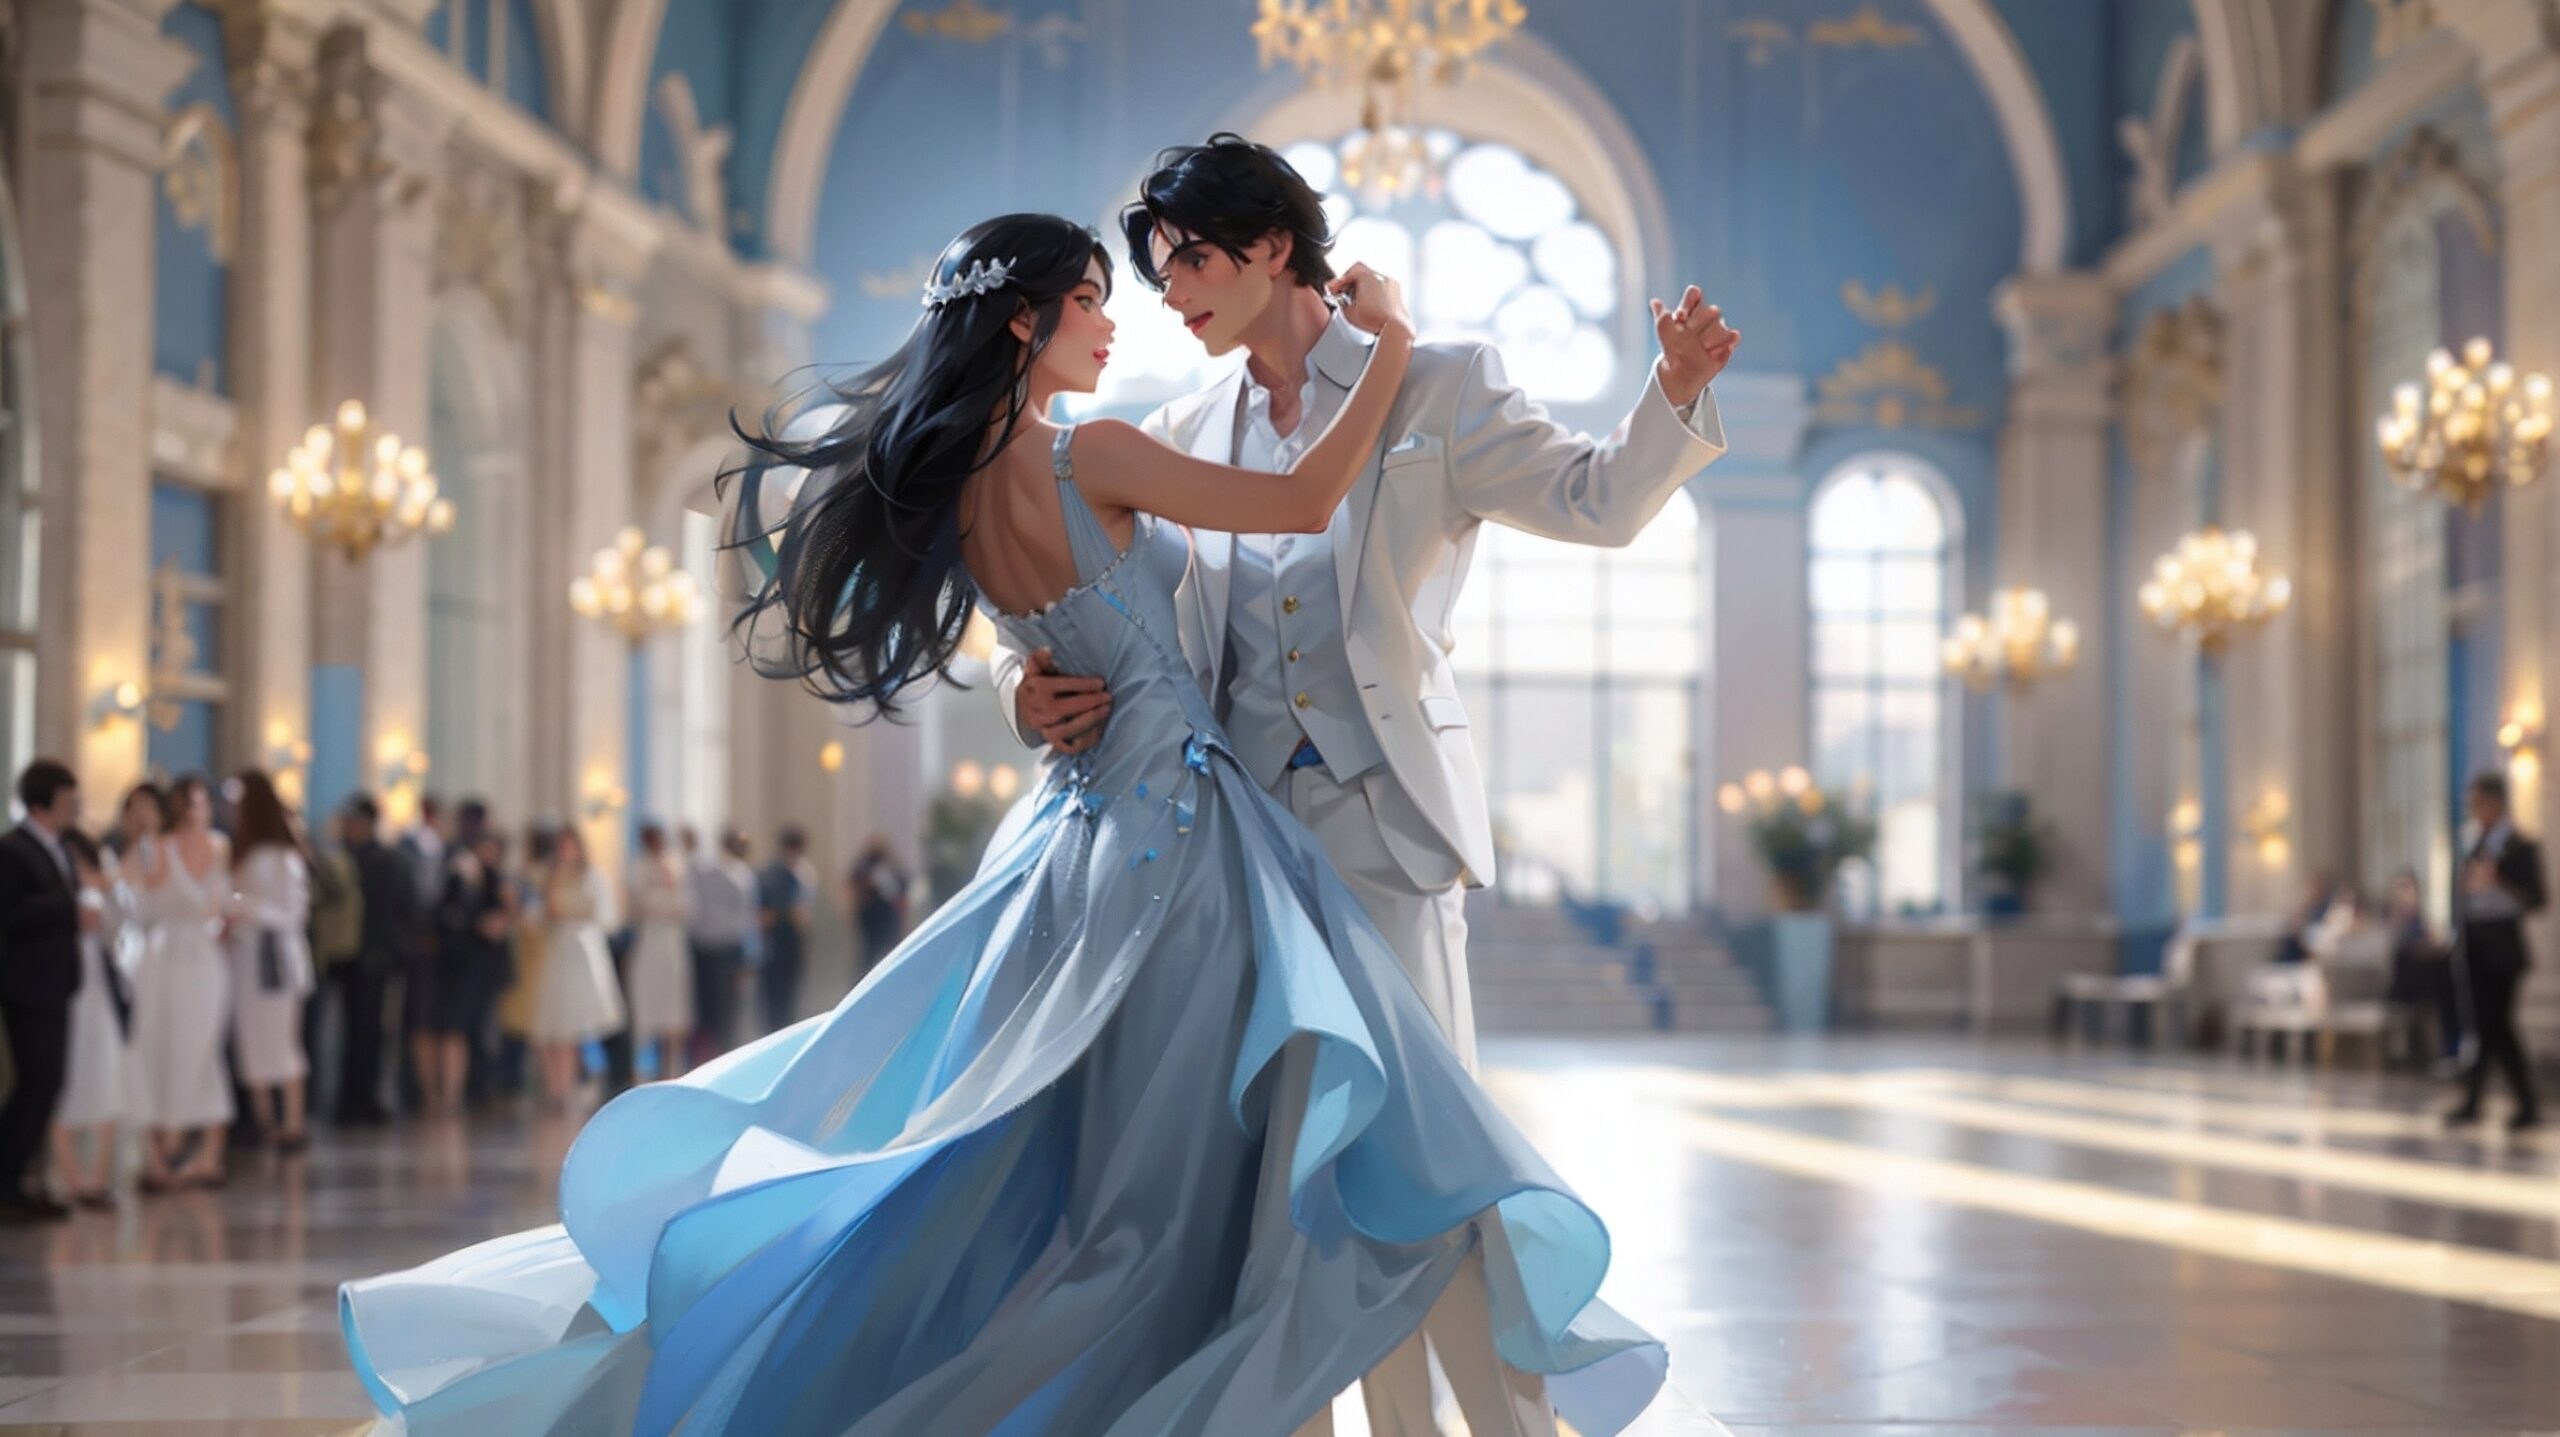 تفسير حلم الرقص بالشعر للمتزوجه وتفسير حلم الرقص للمتزوجه